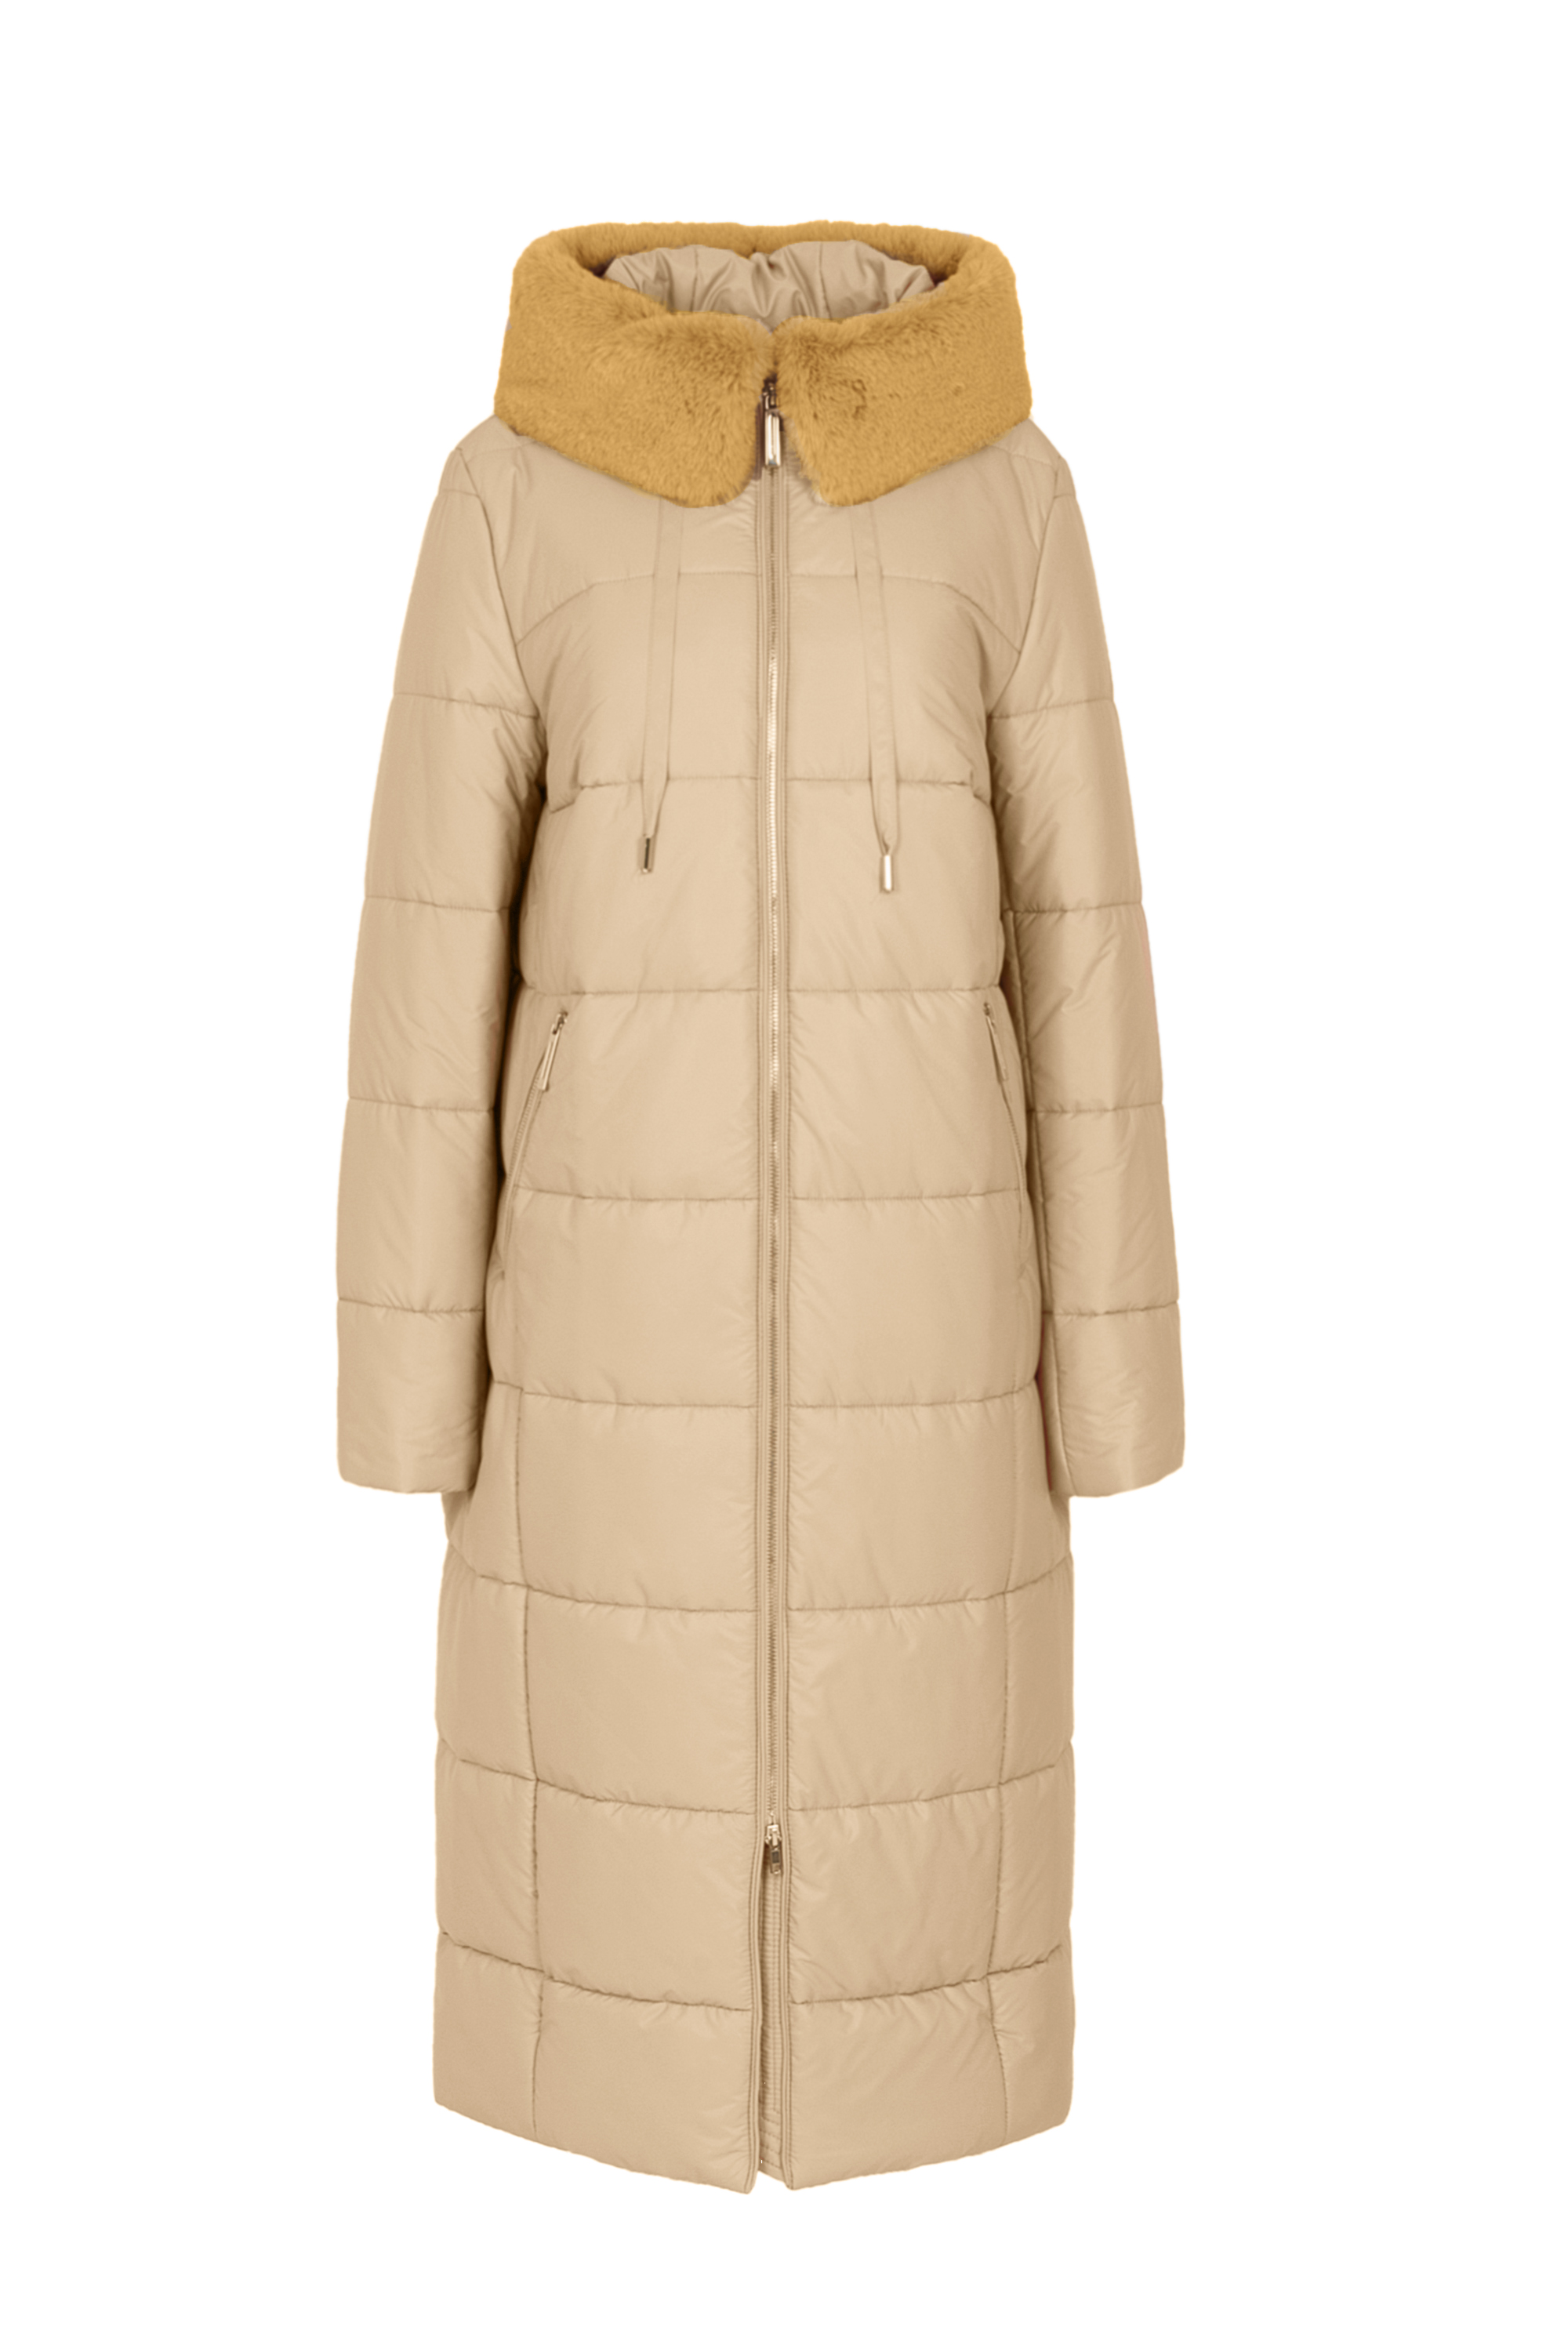 Пальто женское плащевое утепленное 5S-13062-1. Фото 1.